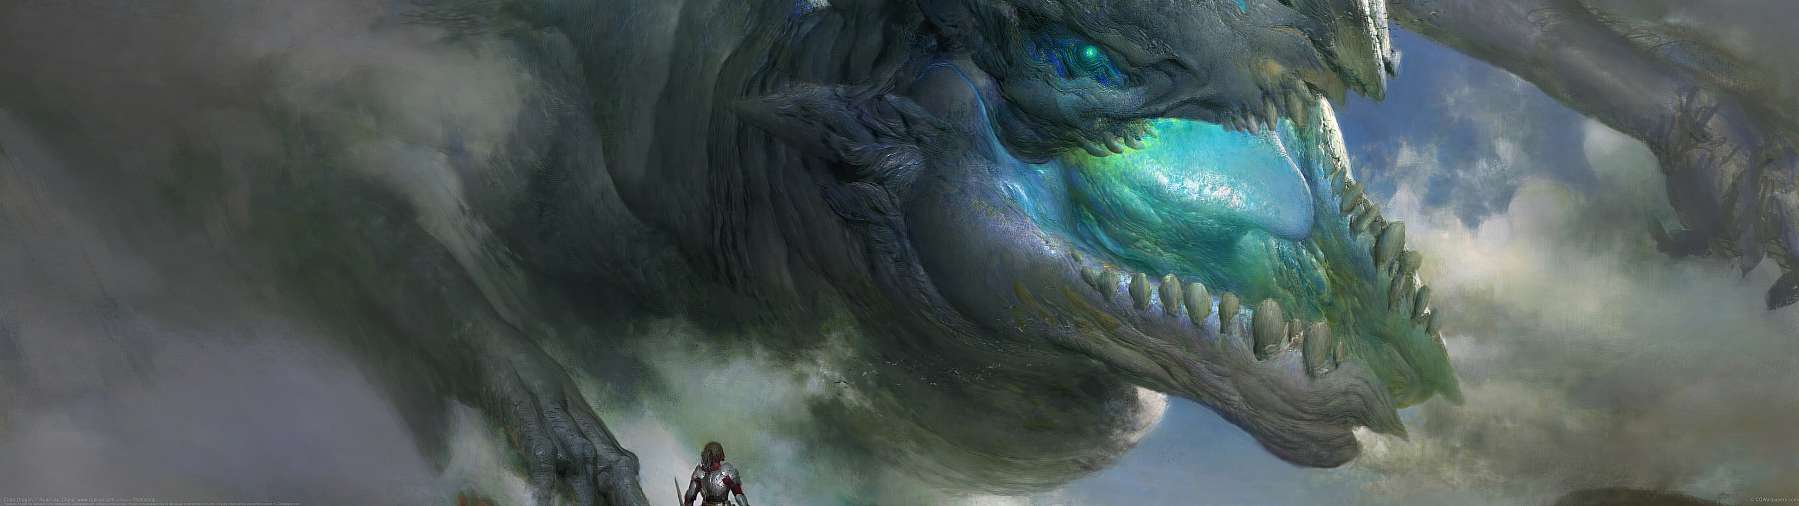 Elder Dragon ultralarge fond d'cran